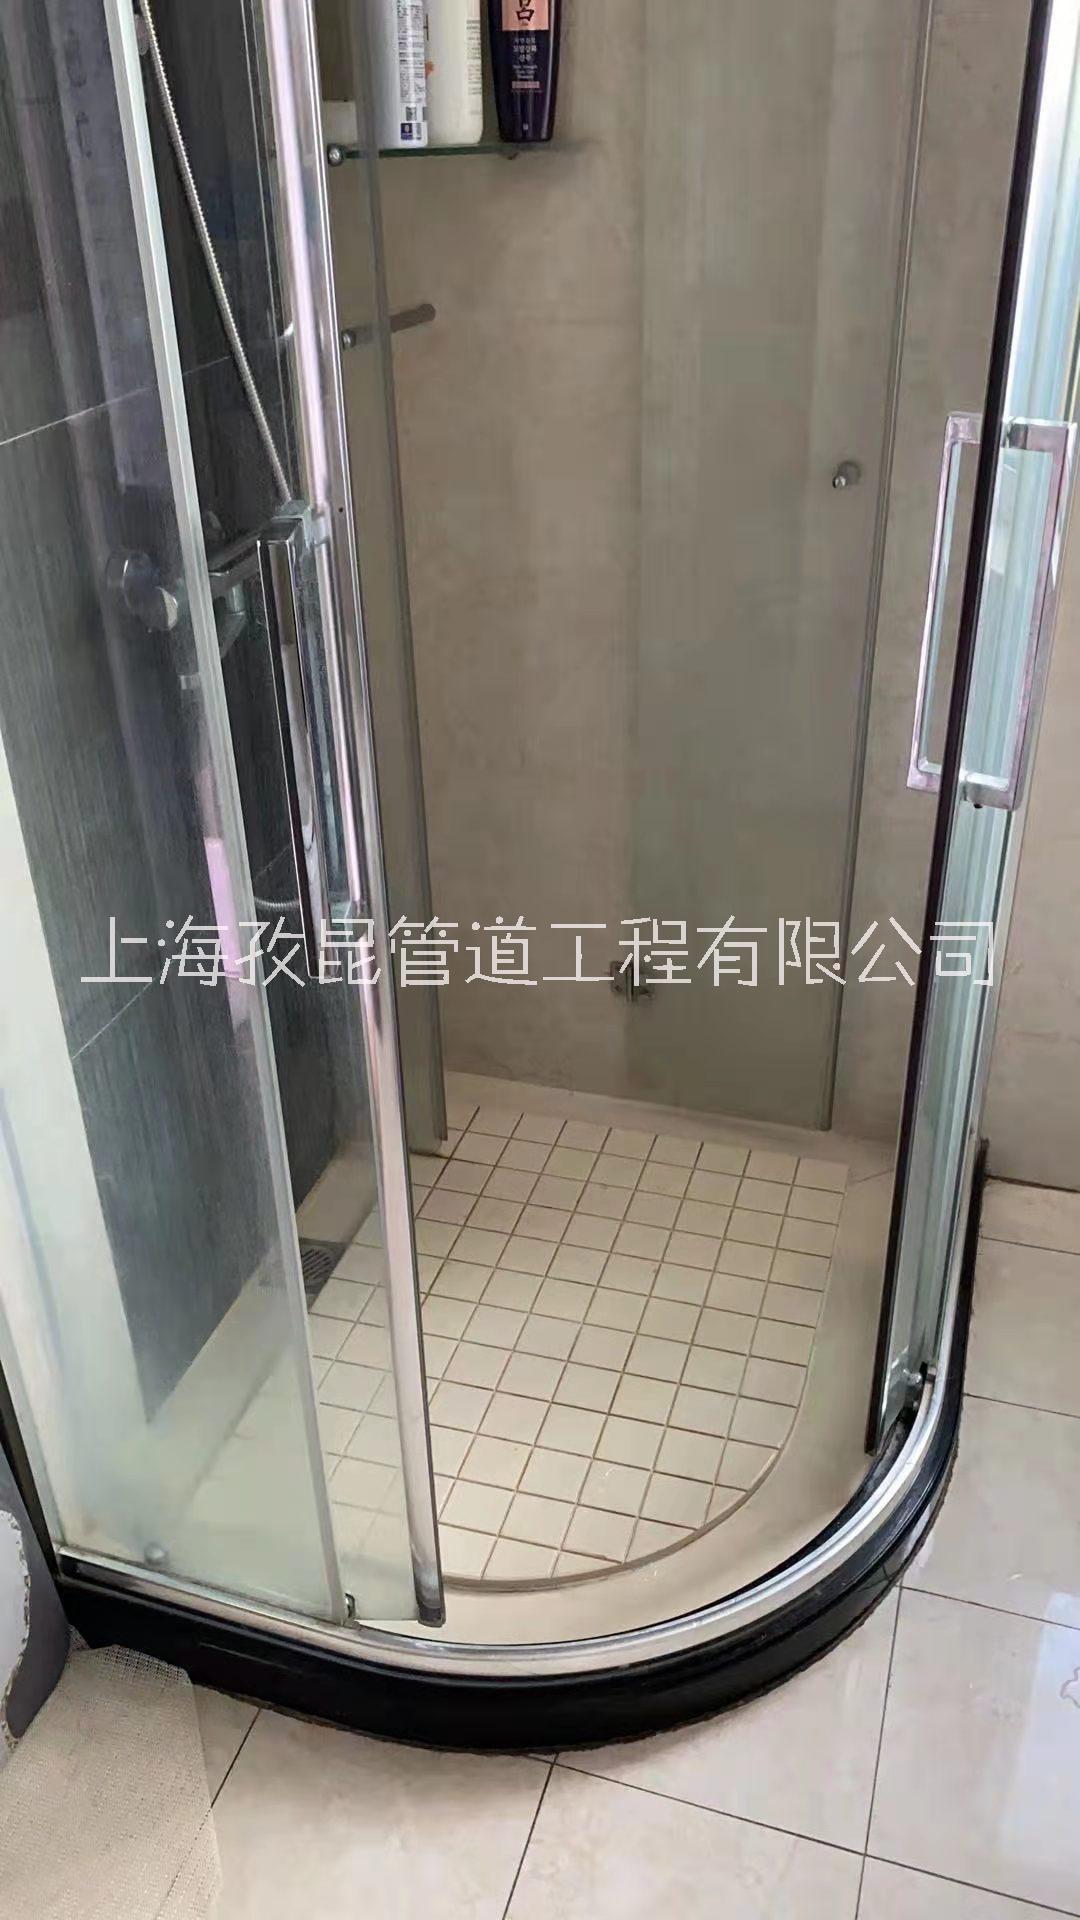 上海福瑞淋浴房维修移门下沉 静安区维修淋浴房